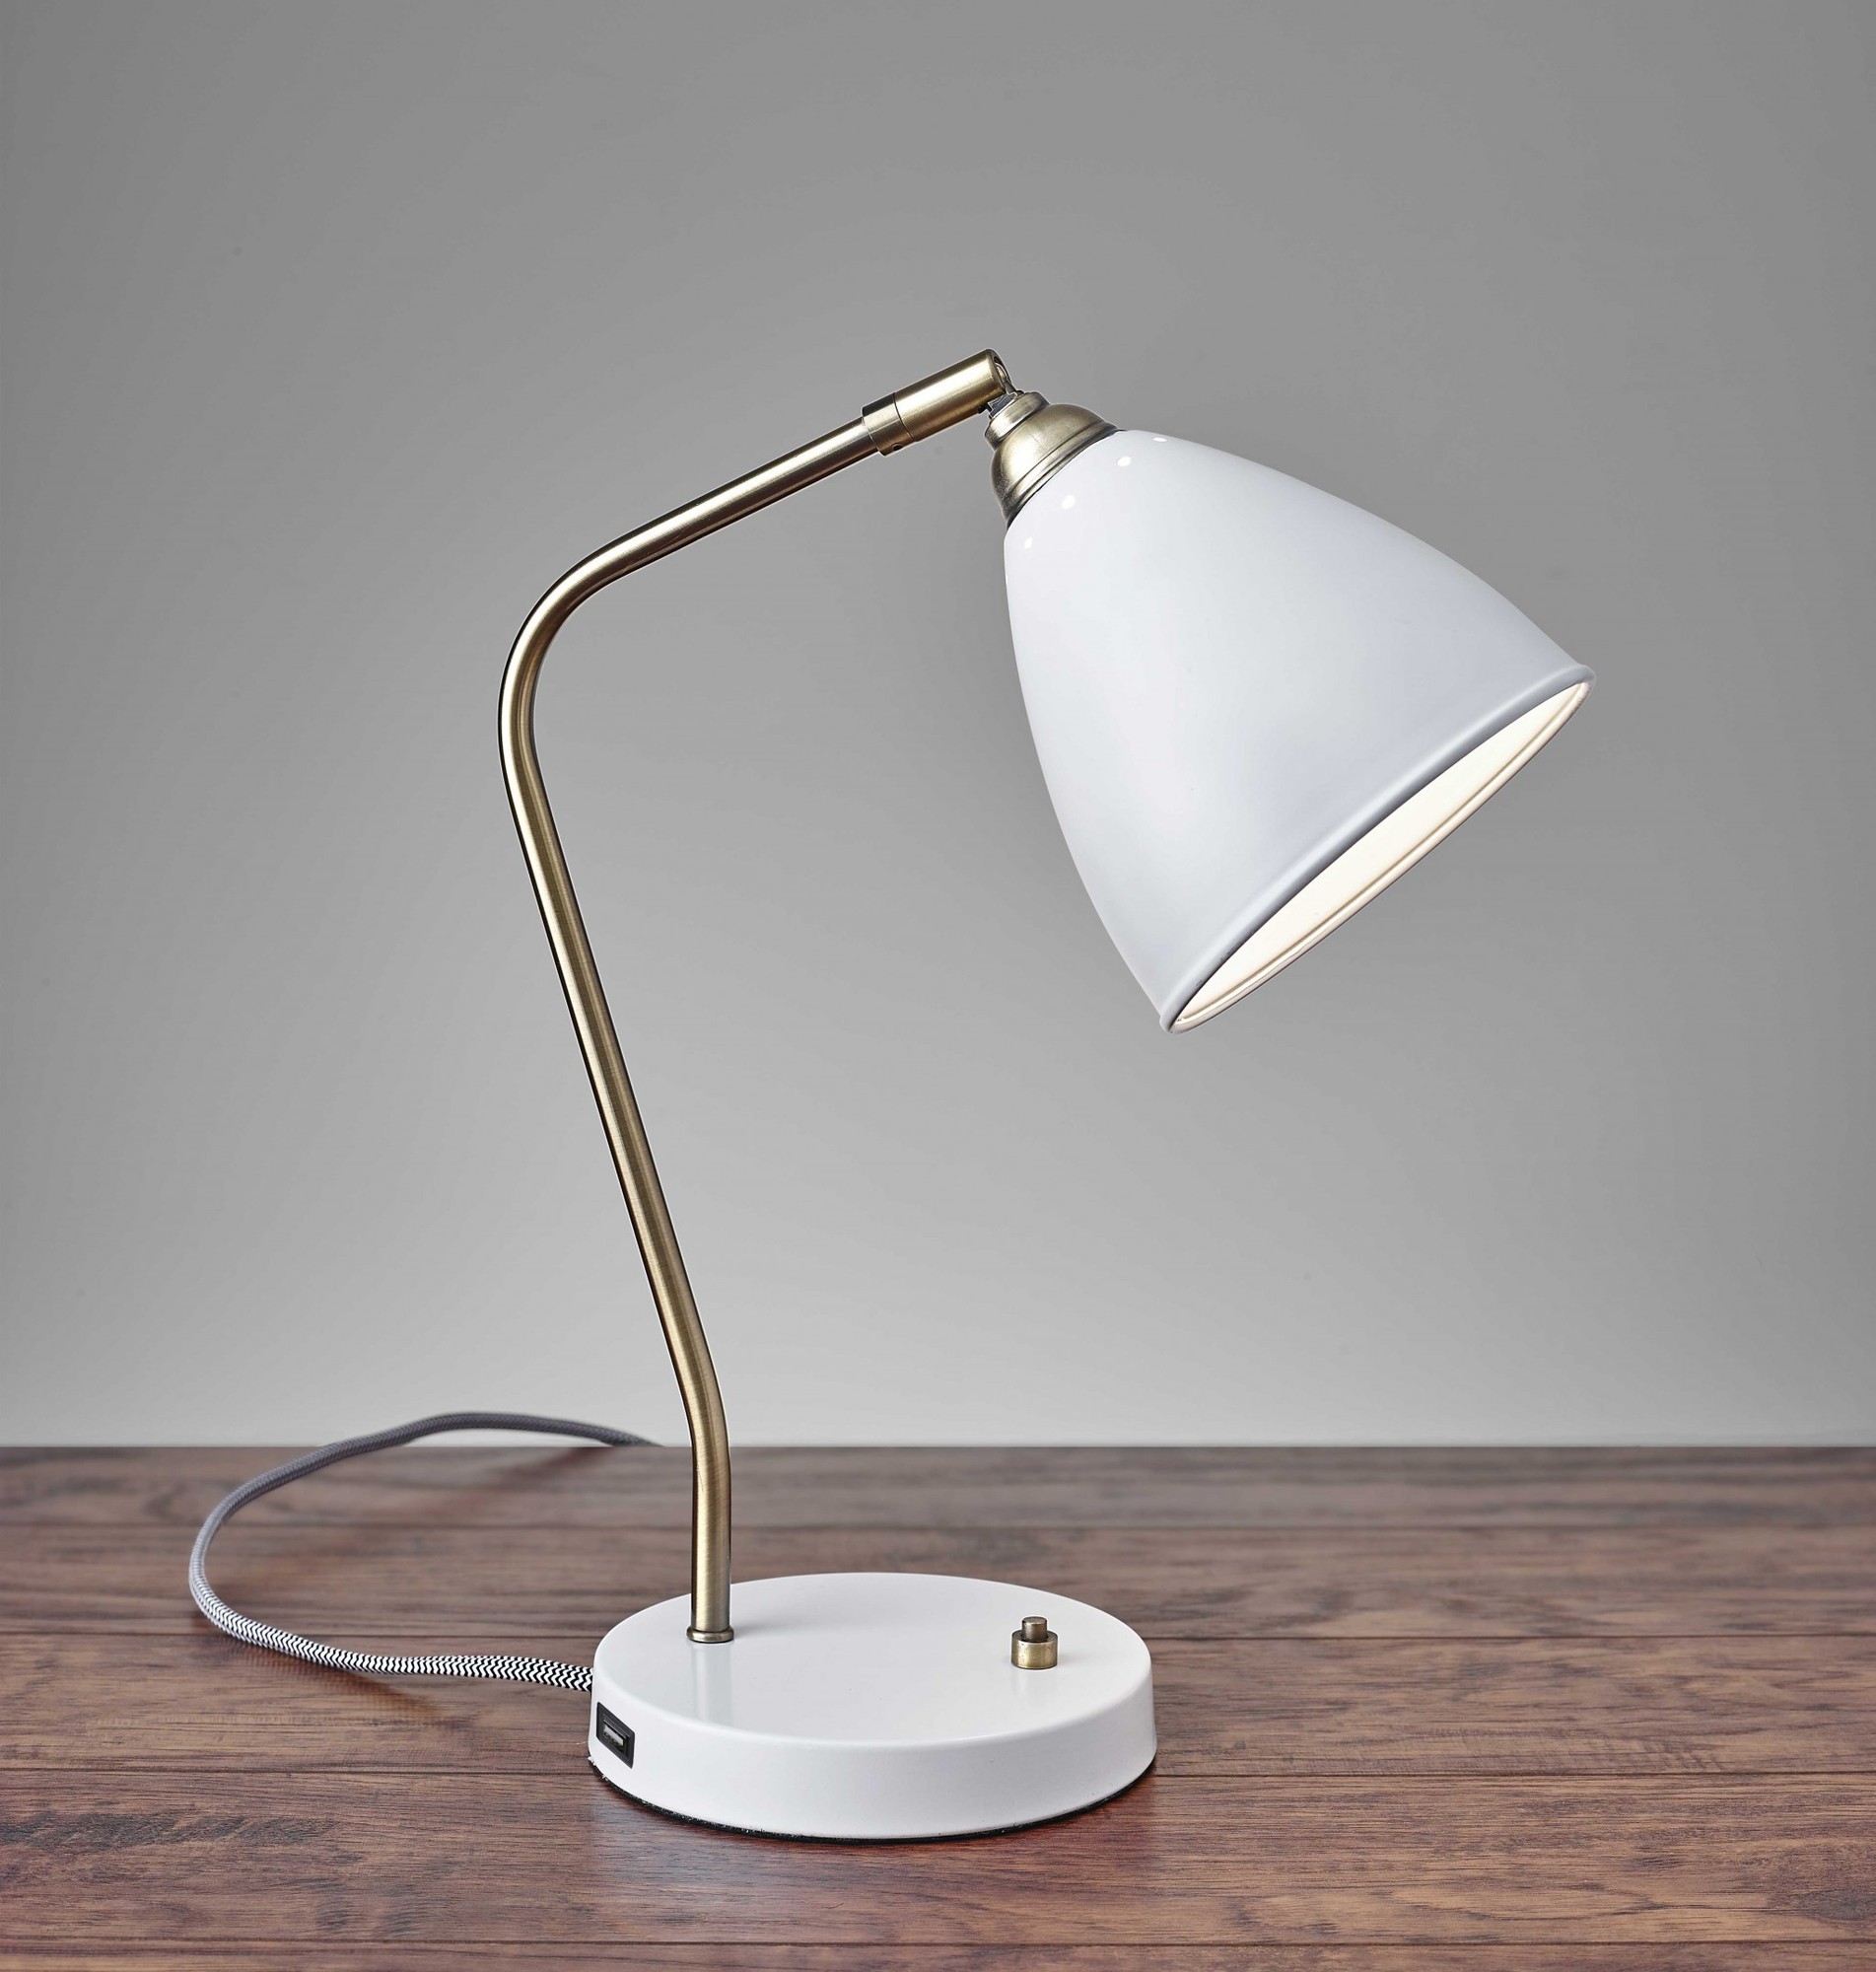 6.25" X 11-12.75" X 16-21" White Metal Desk Lamp